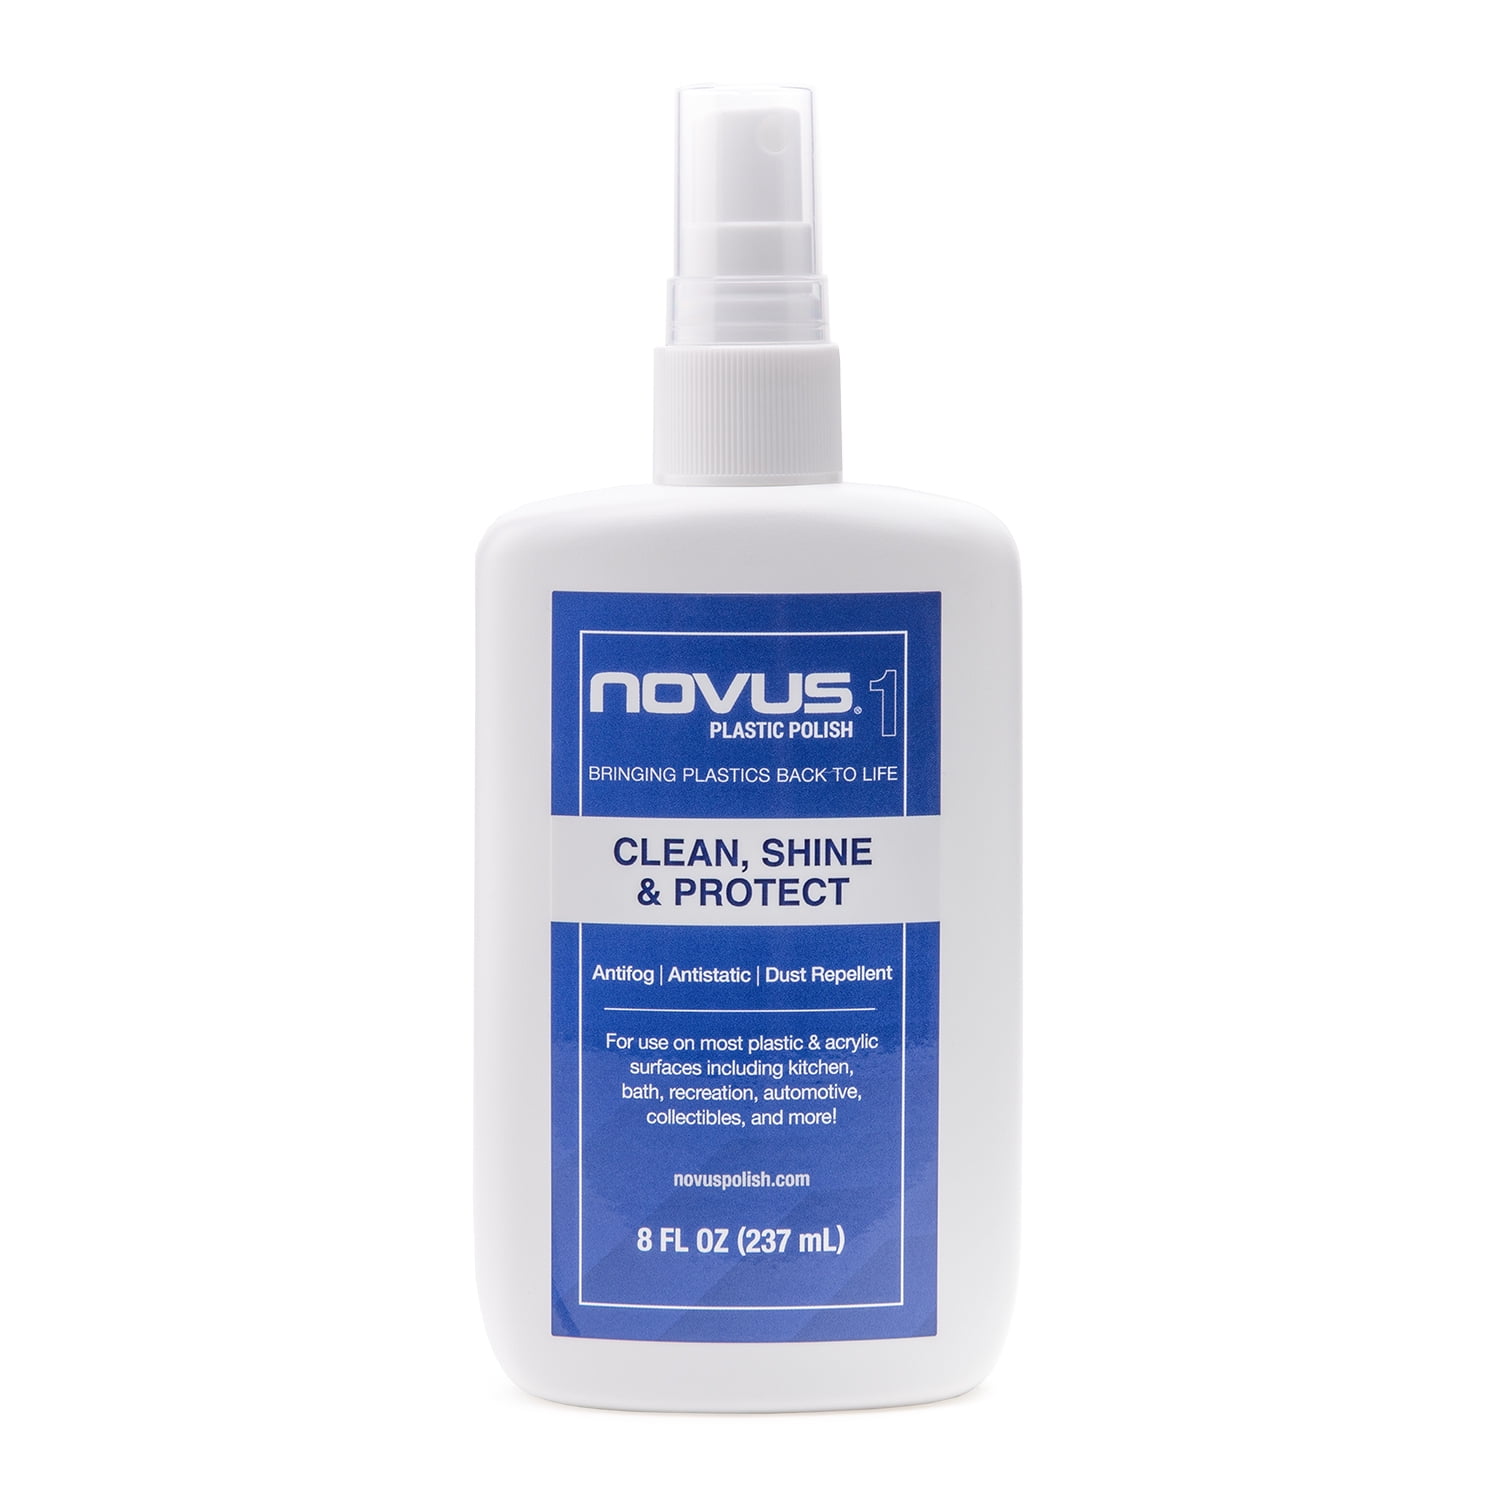 Novus Plastic Polish Features a Squeeze Bottle